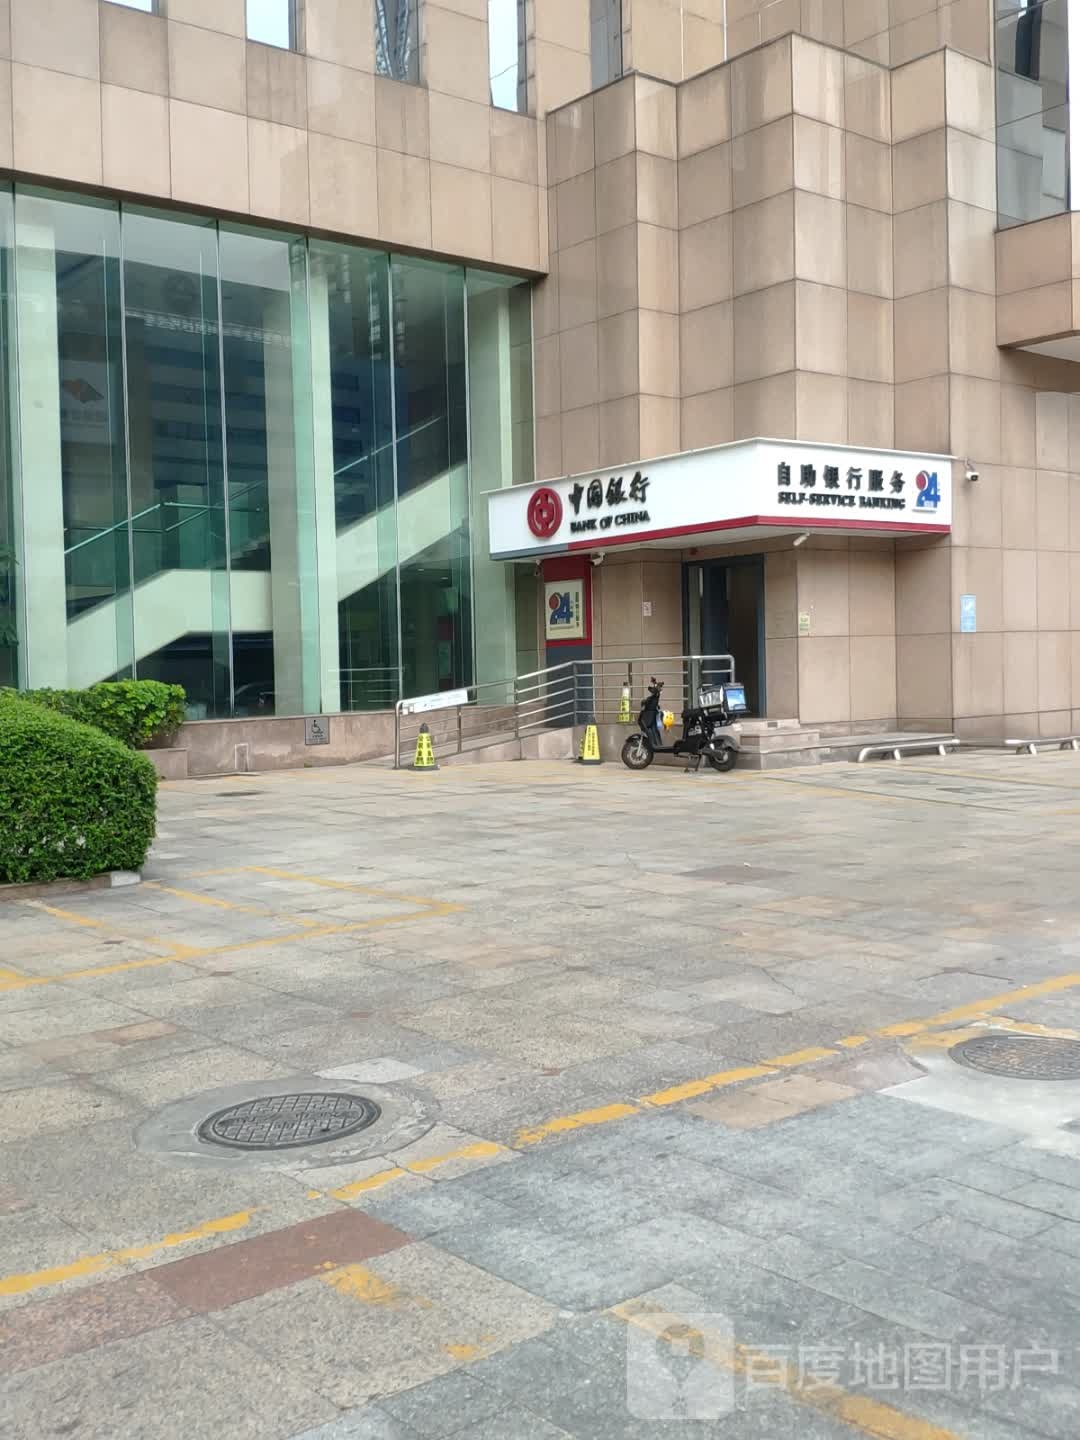 中国银行24小时自助银行(佛山南海桂城支行)